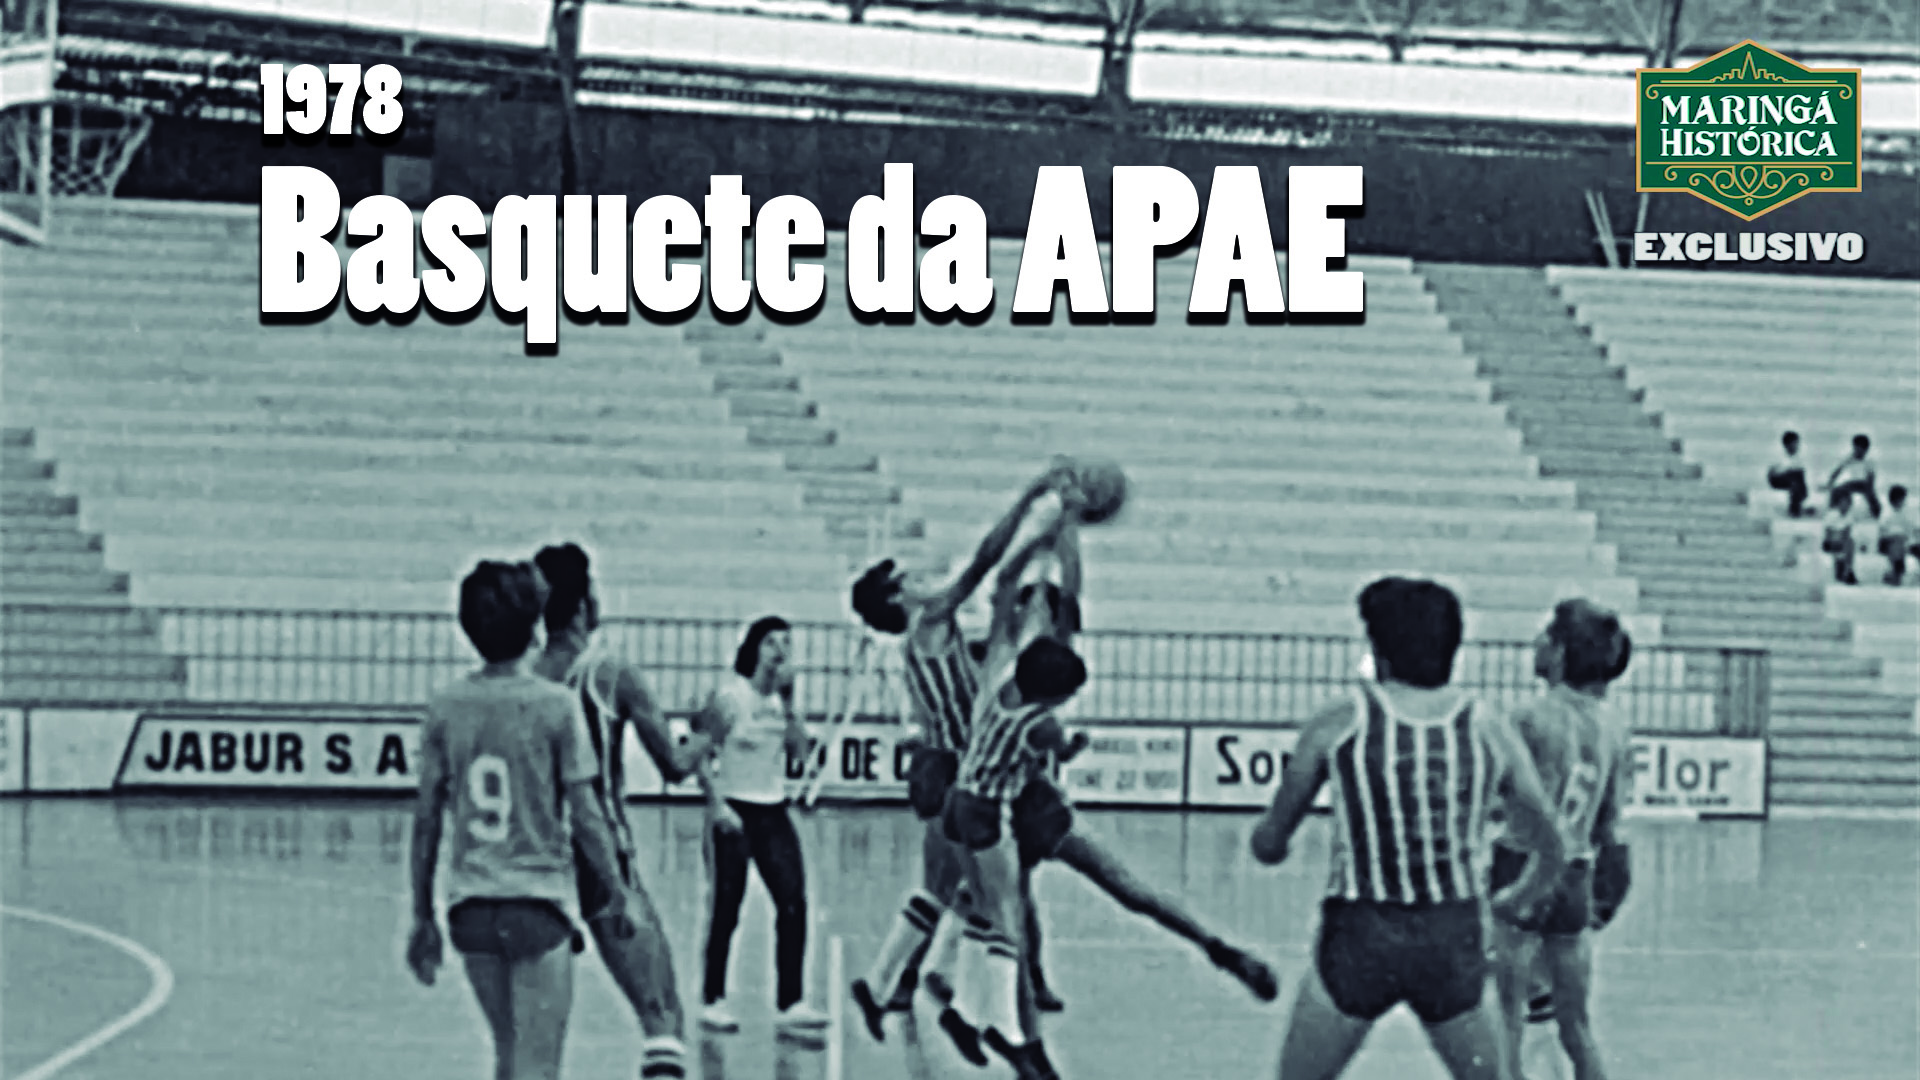 RARIDADE - Jogo de basquete da APAE em 1978